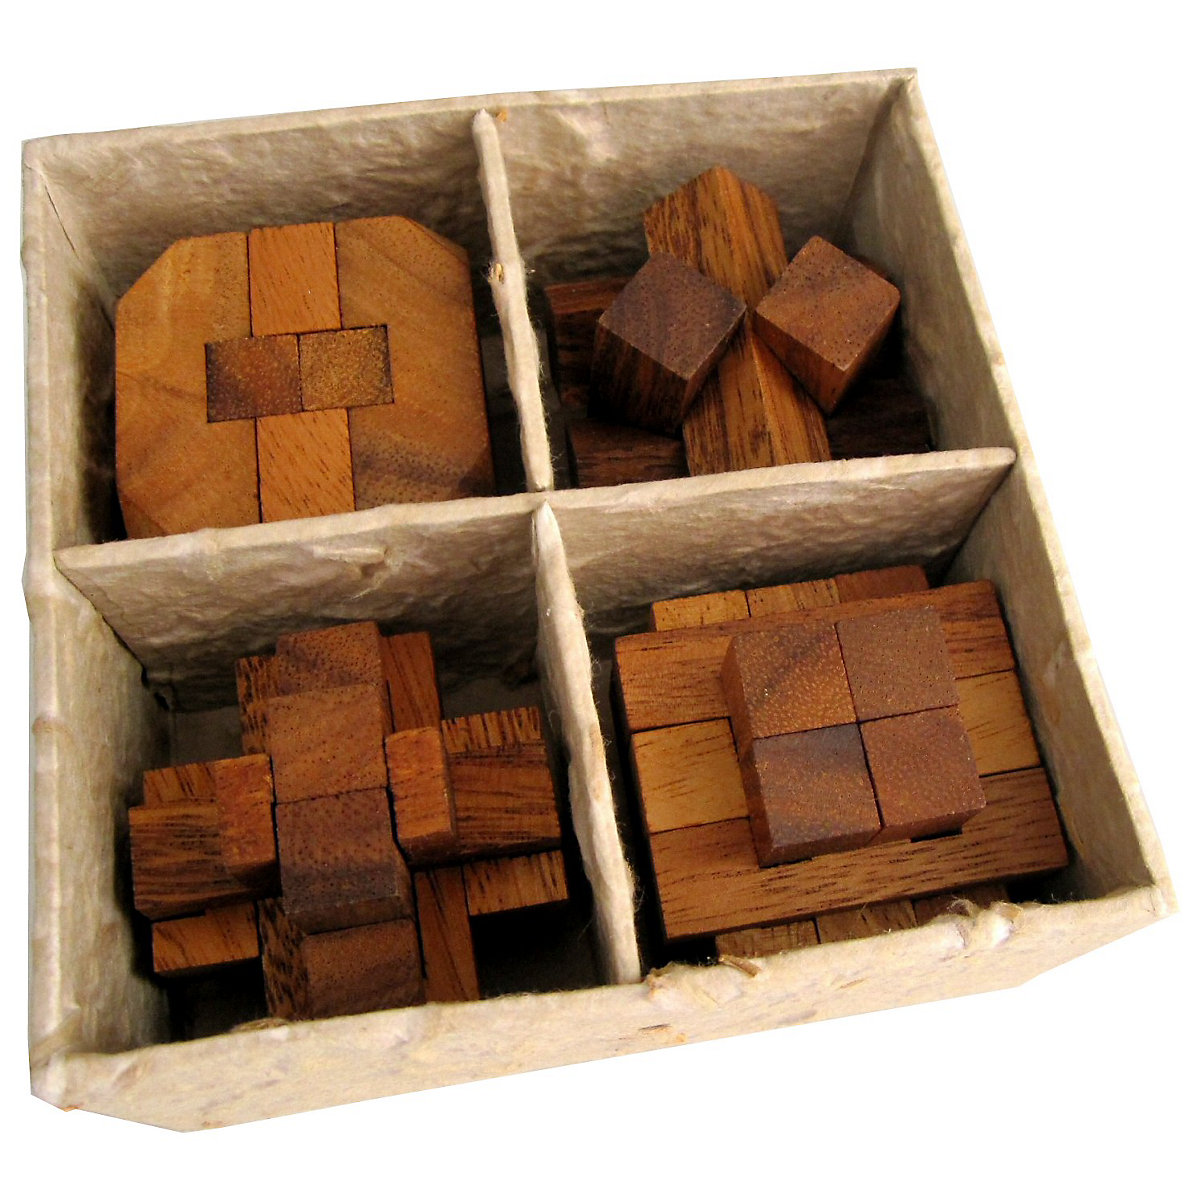 LOGOPLAY 4 Knobelspiele im Set 3D Puzzle in einer dekorativen Geschenkbox